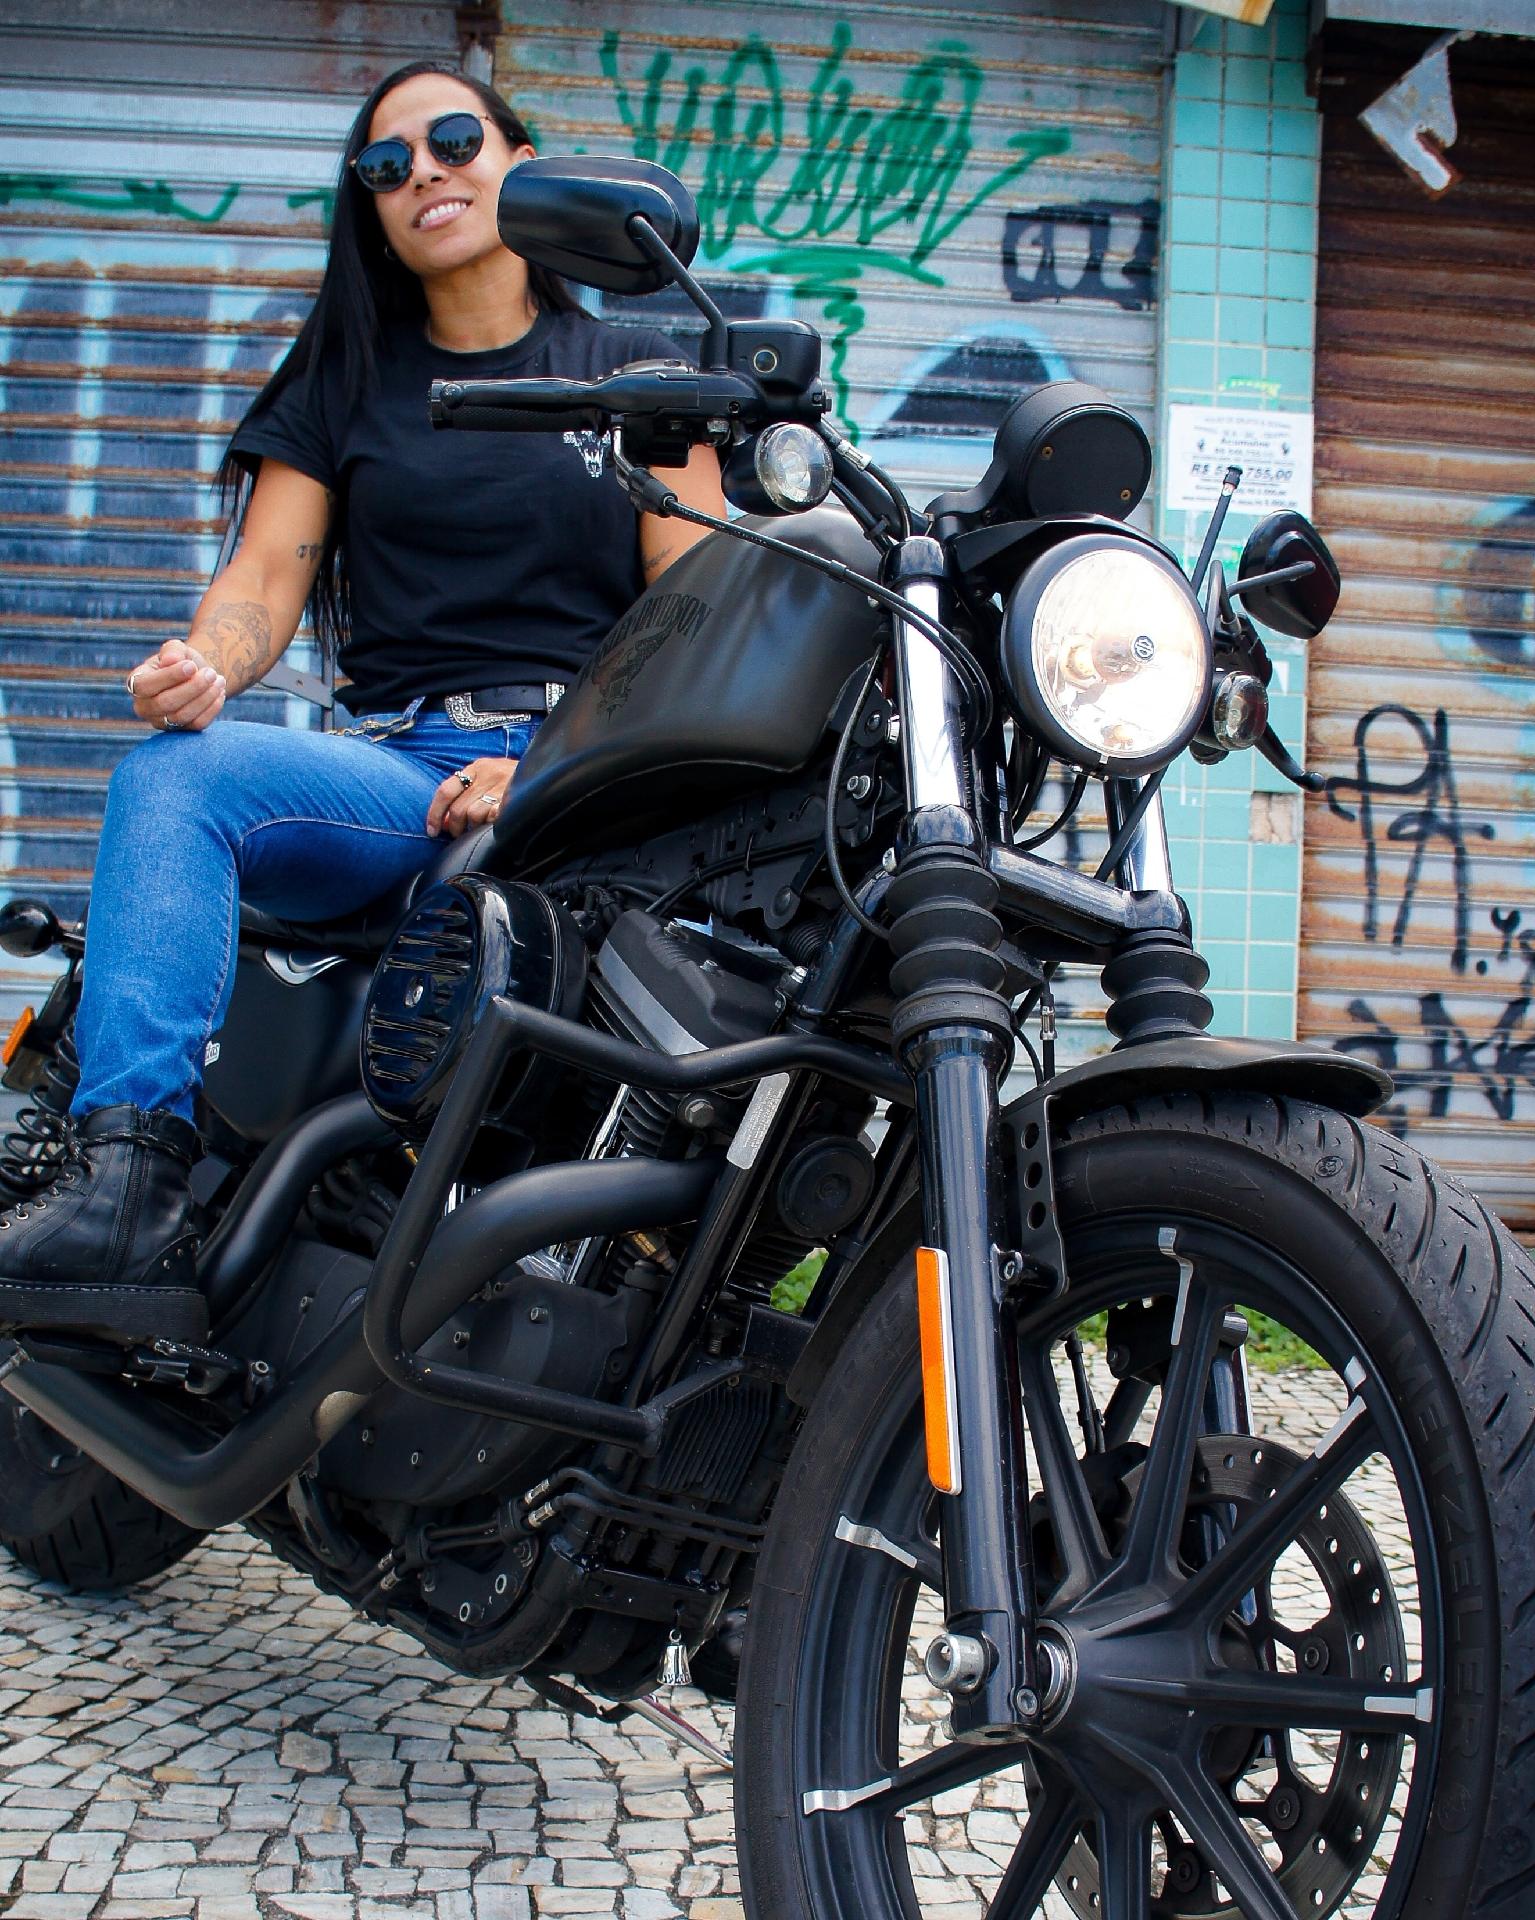 Grupo de motociclistas do /r/brasil